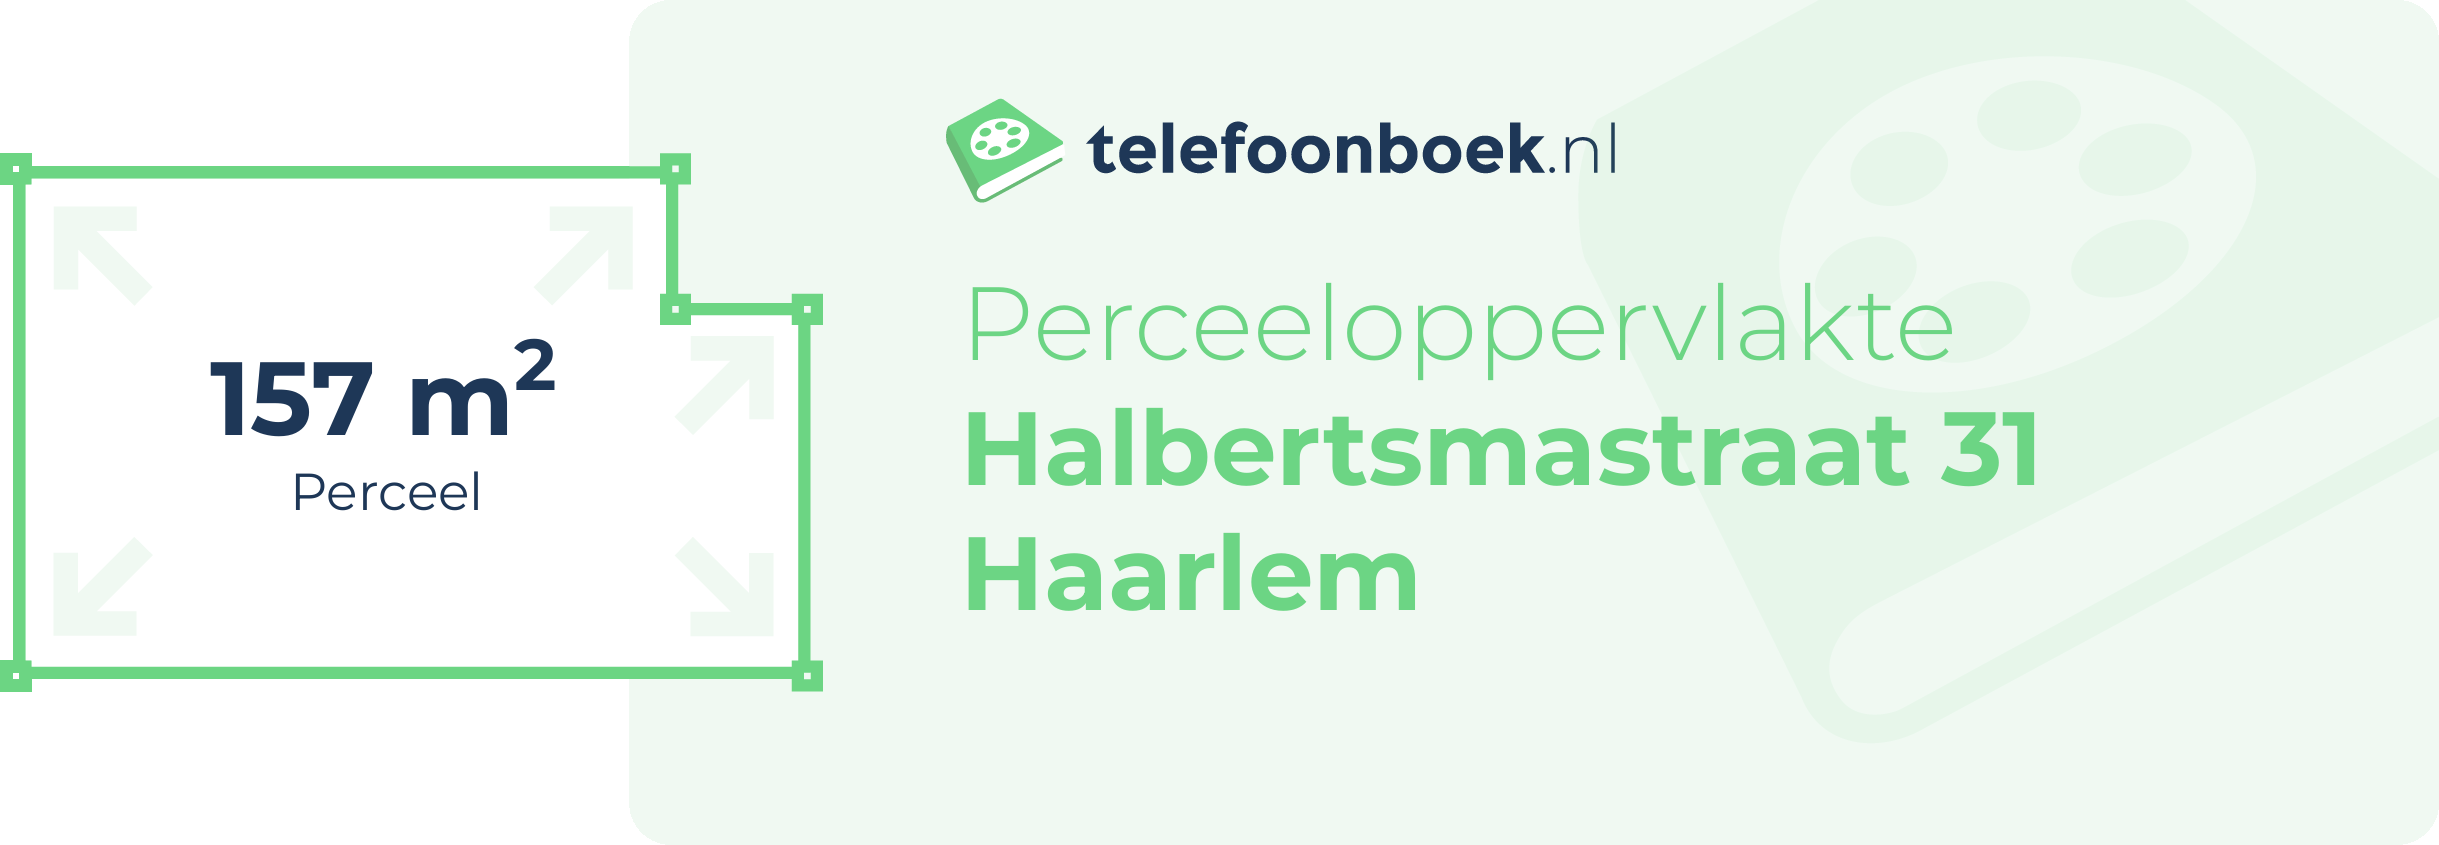 Perceeloppervlakte Halbertsmastraat 31 Haarlem